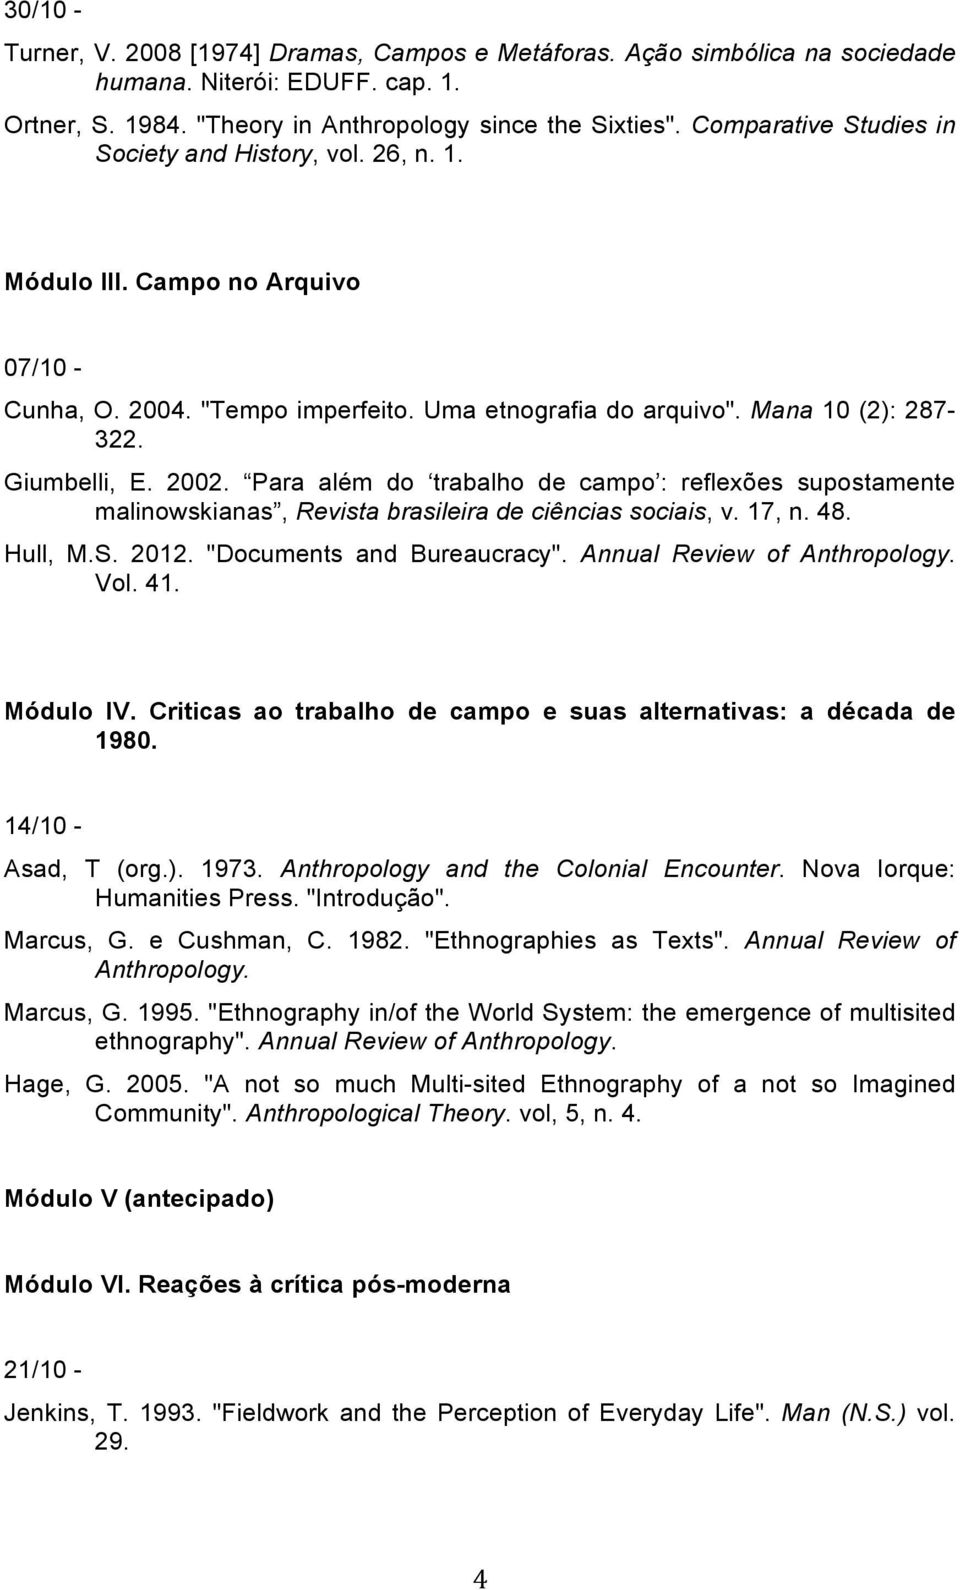 Para além do trabalho de campo : reflexões supostamente malinowskianas, Revista brasileira de ciências sociais, v. 17, n. 48. Hull, M.S. 2012. "Documents and Bureaucracy".